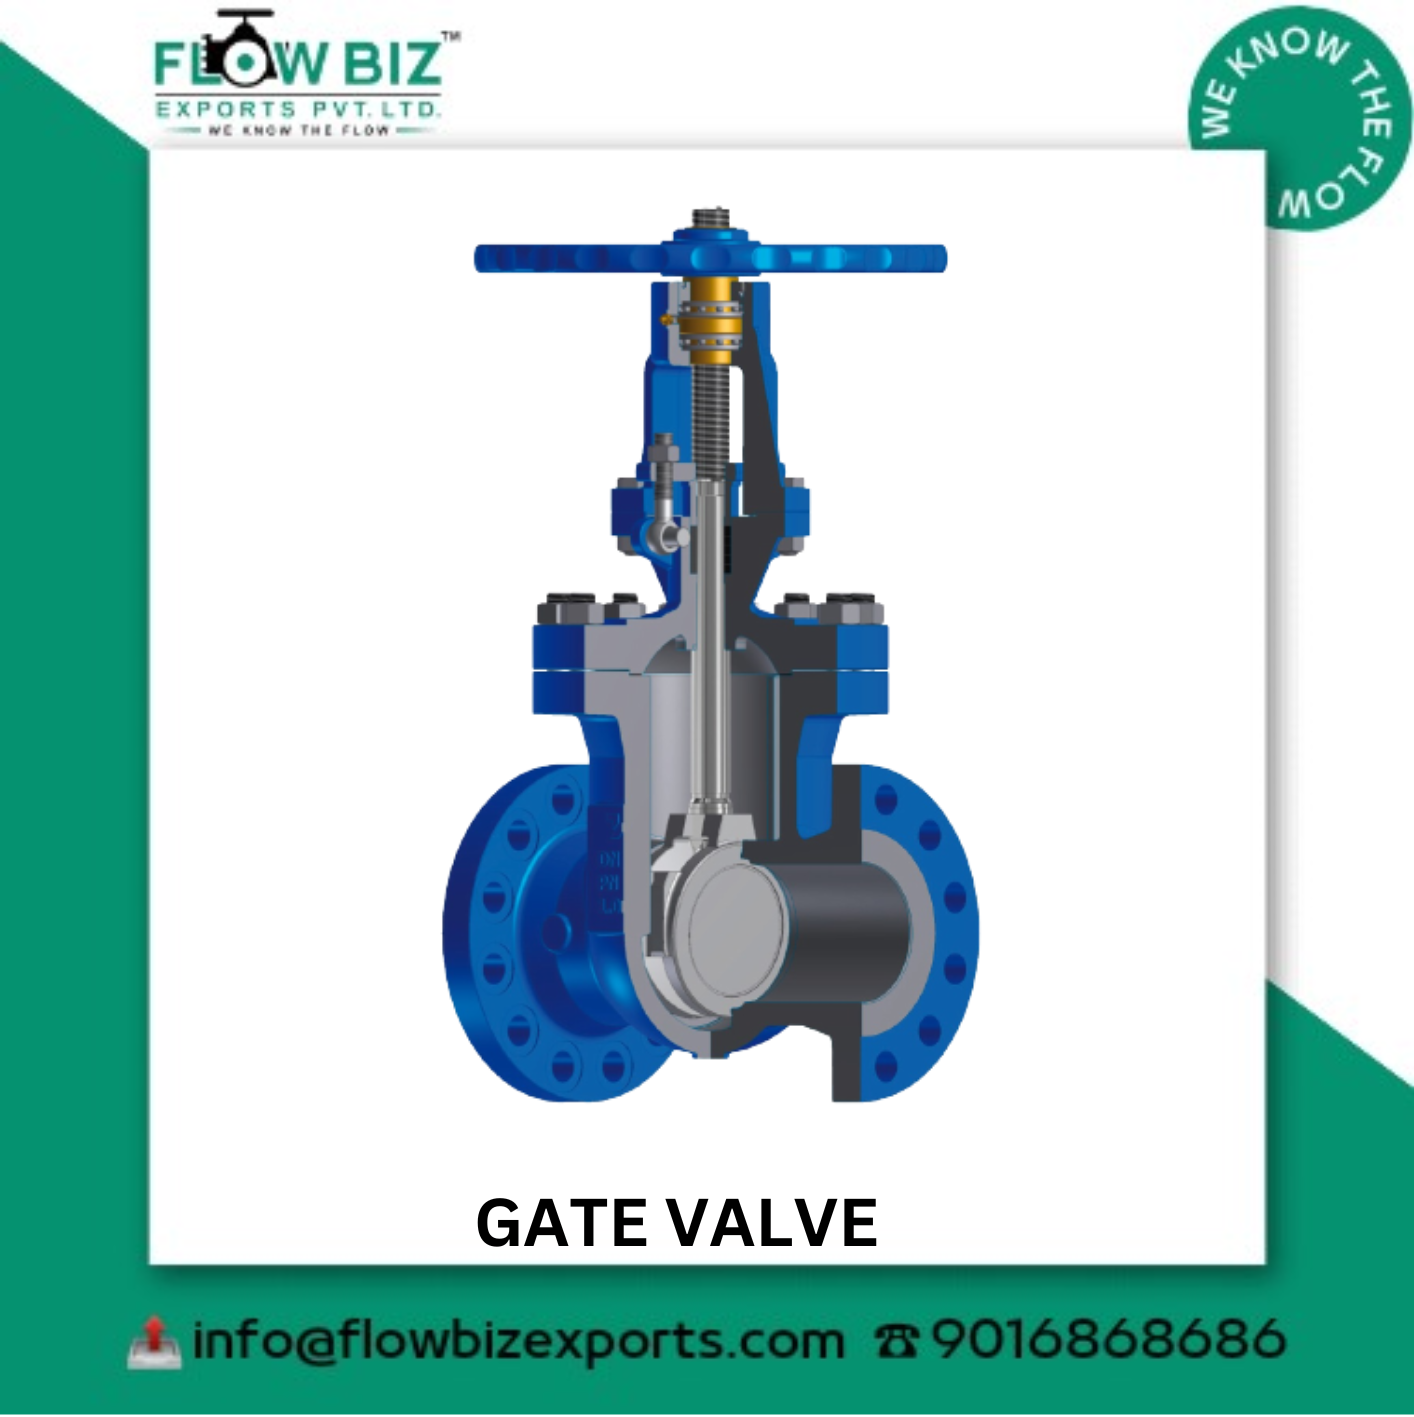 best gate valve manufacturer pune - Flowbiz